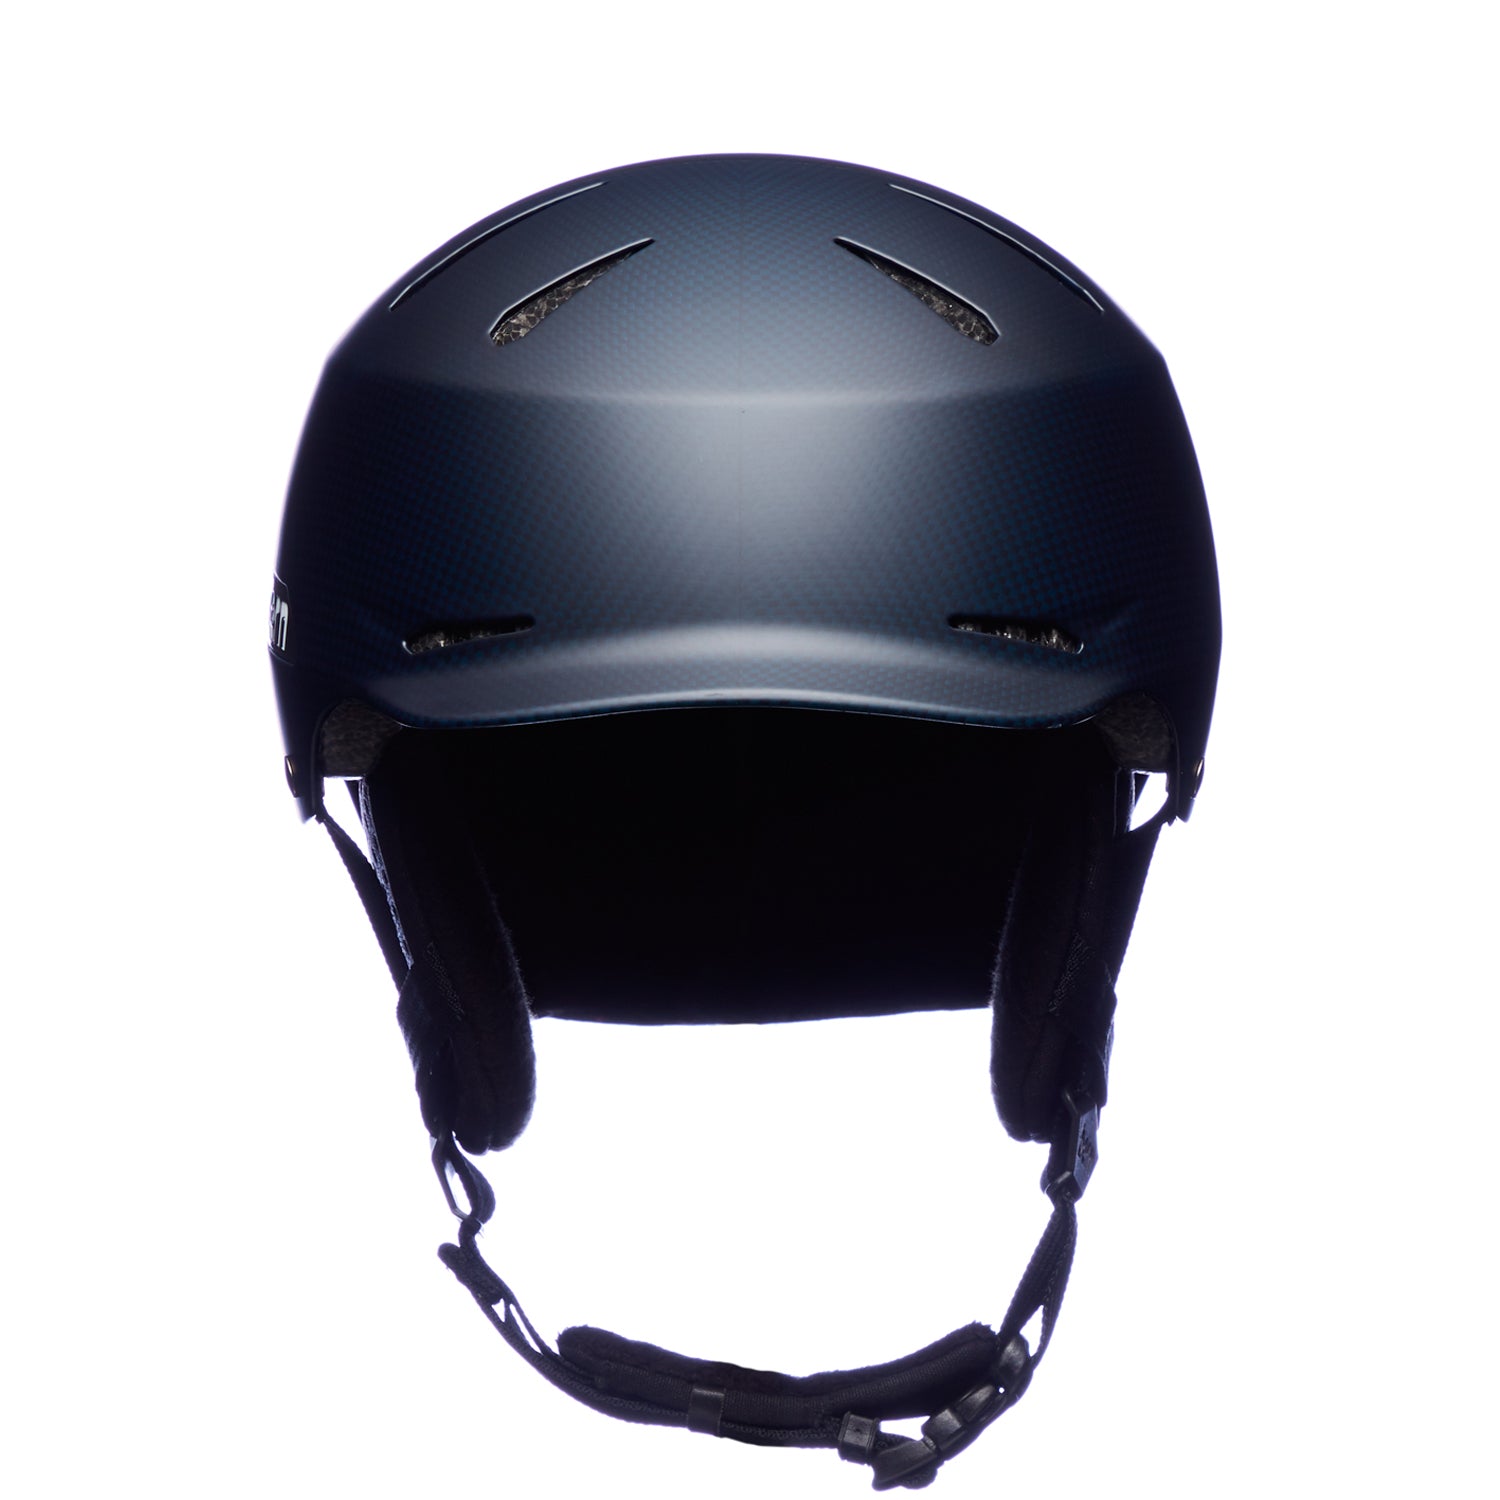 Hendrix MIPS Carbon Fiber Winter Helmet